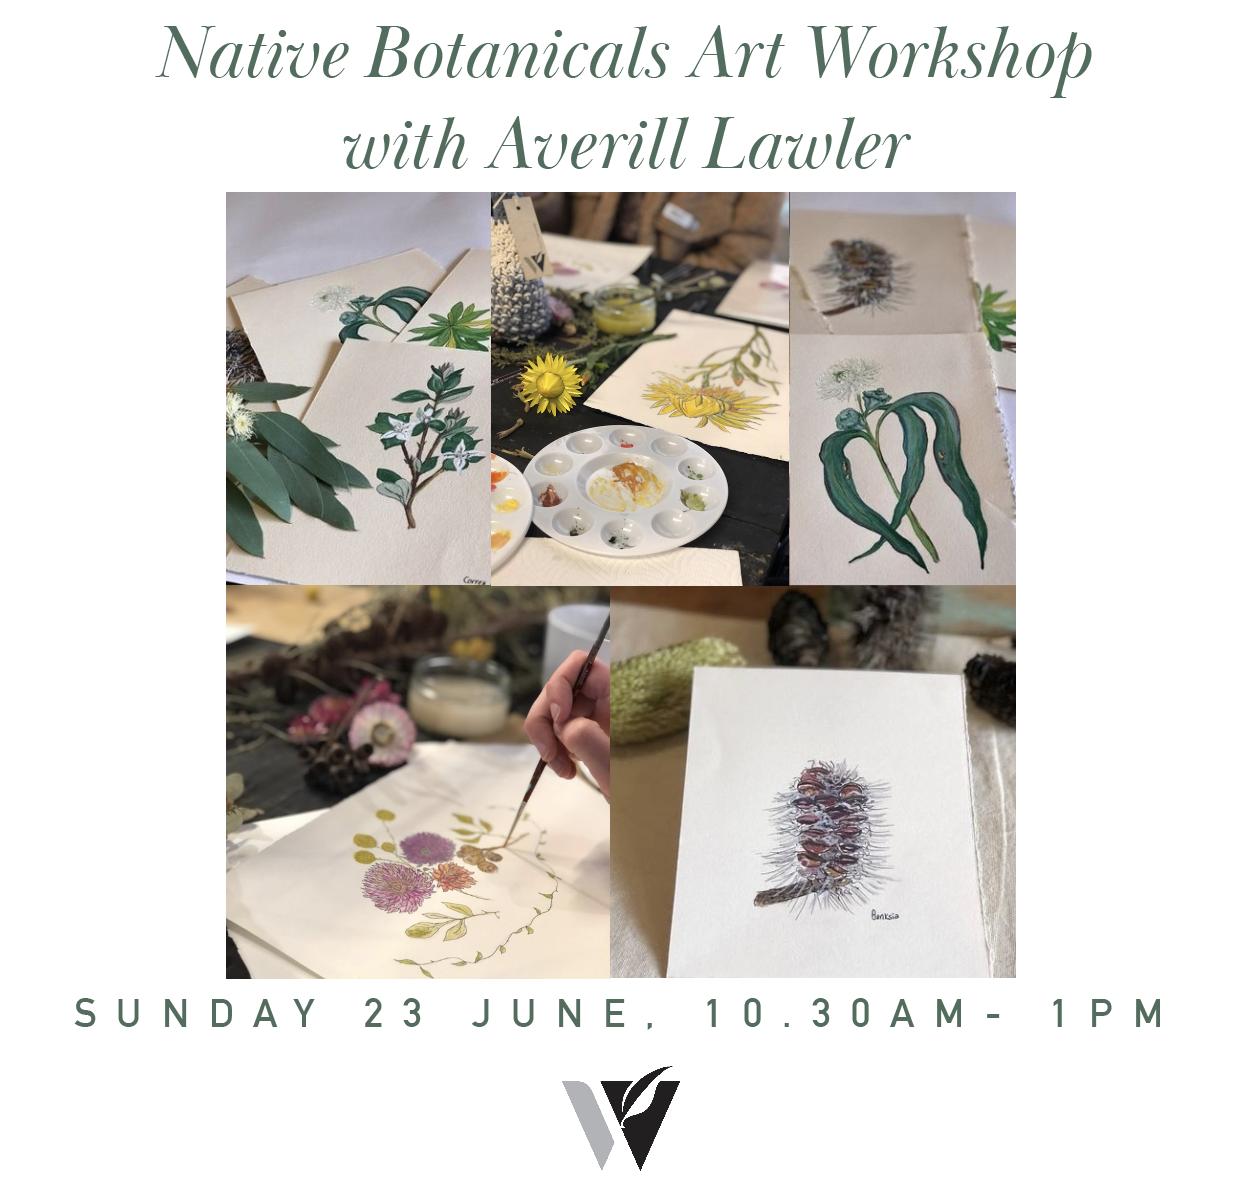 Sunday 23 June - Australian Native Botanicals Painting Workshop